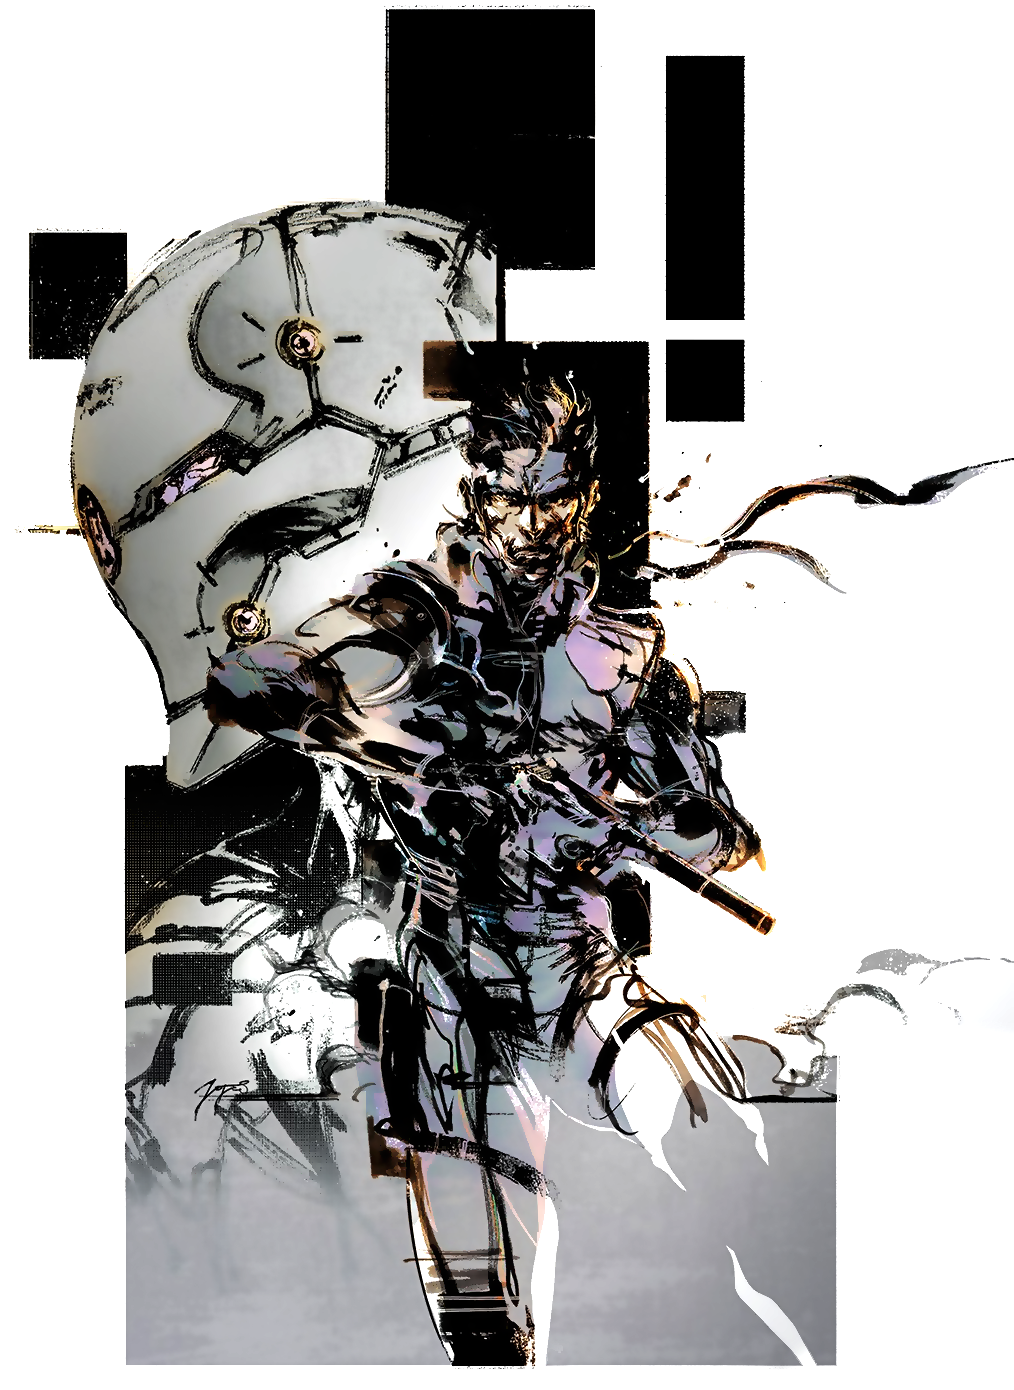 Art of Metal Gear Solid